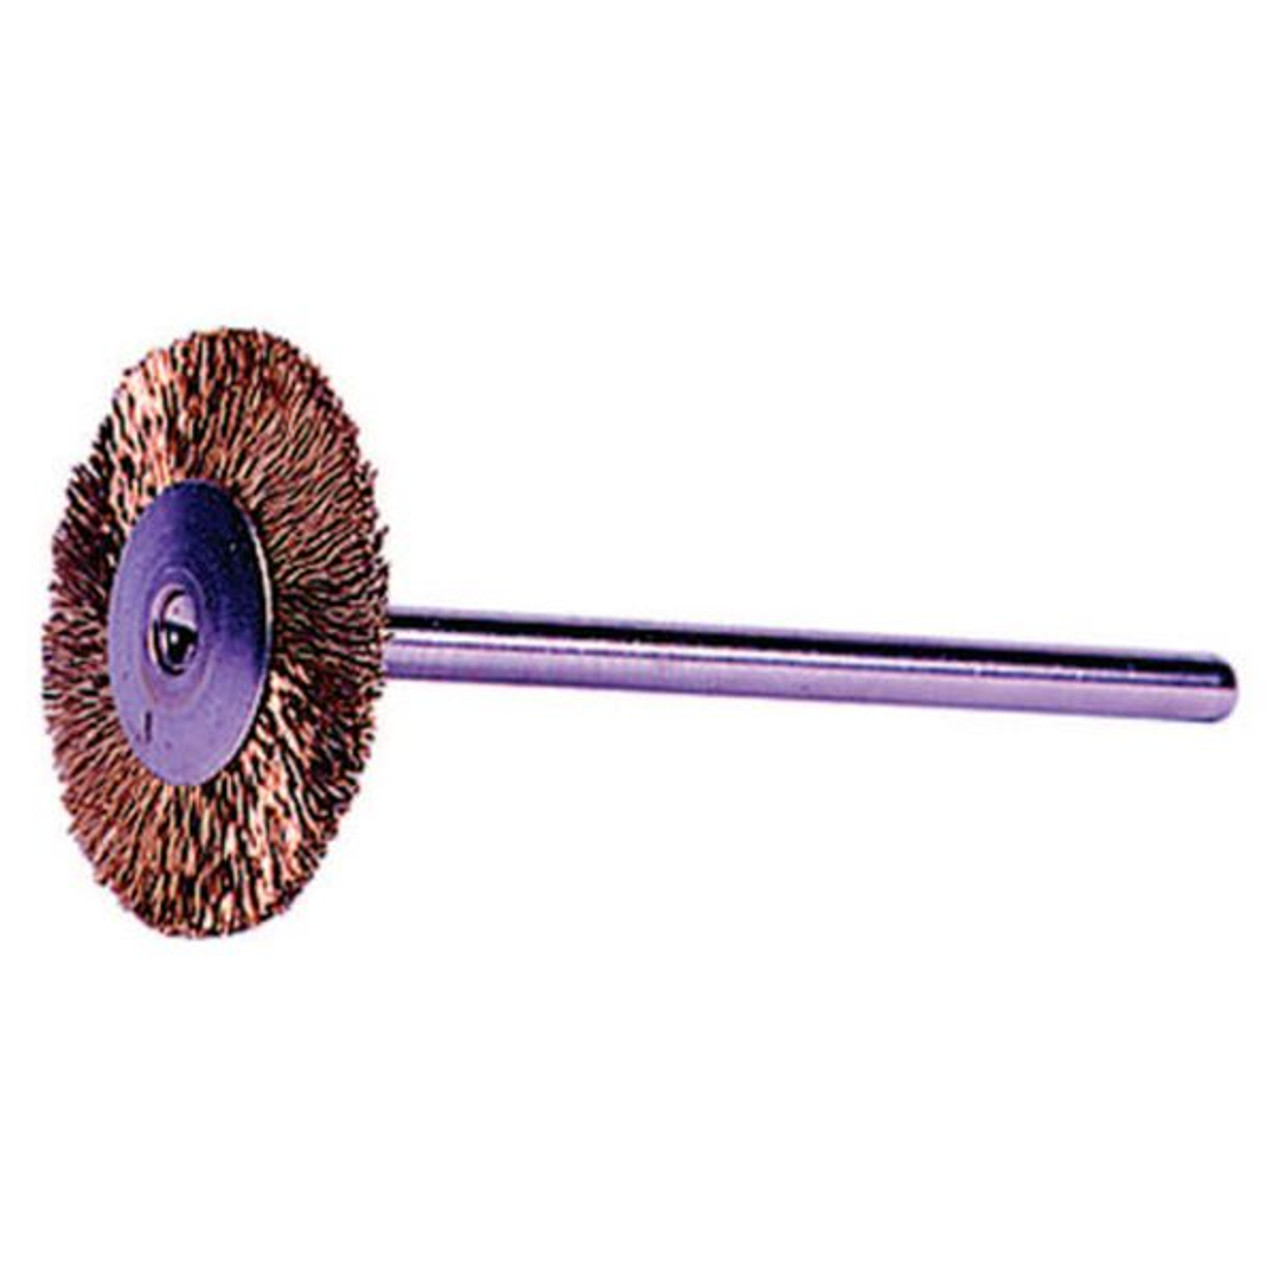 WEILER 26144 Miniature Stem-Mounted Wheel Brush 3/4 0.005 Brass